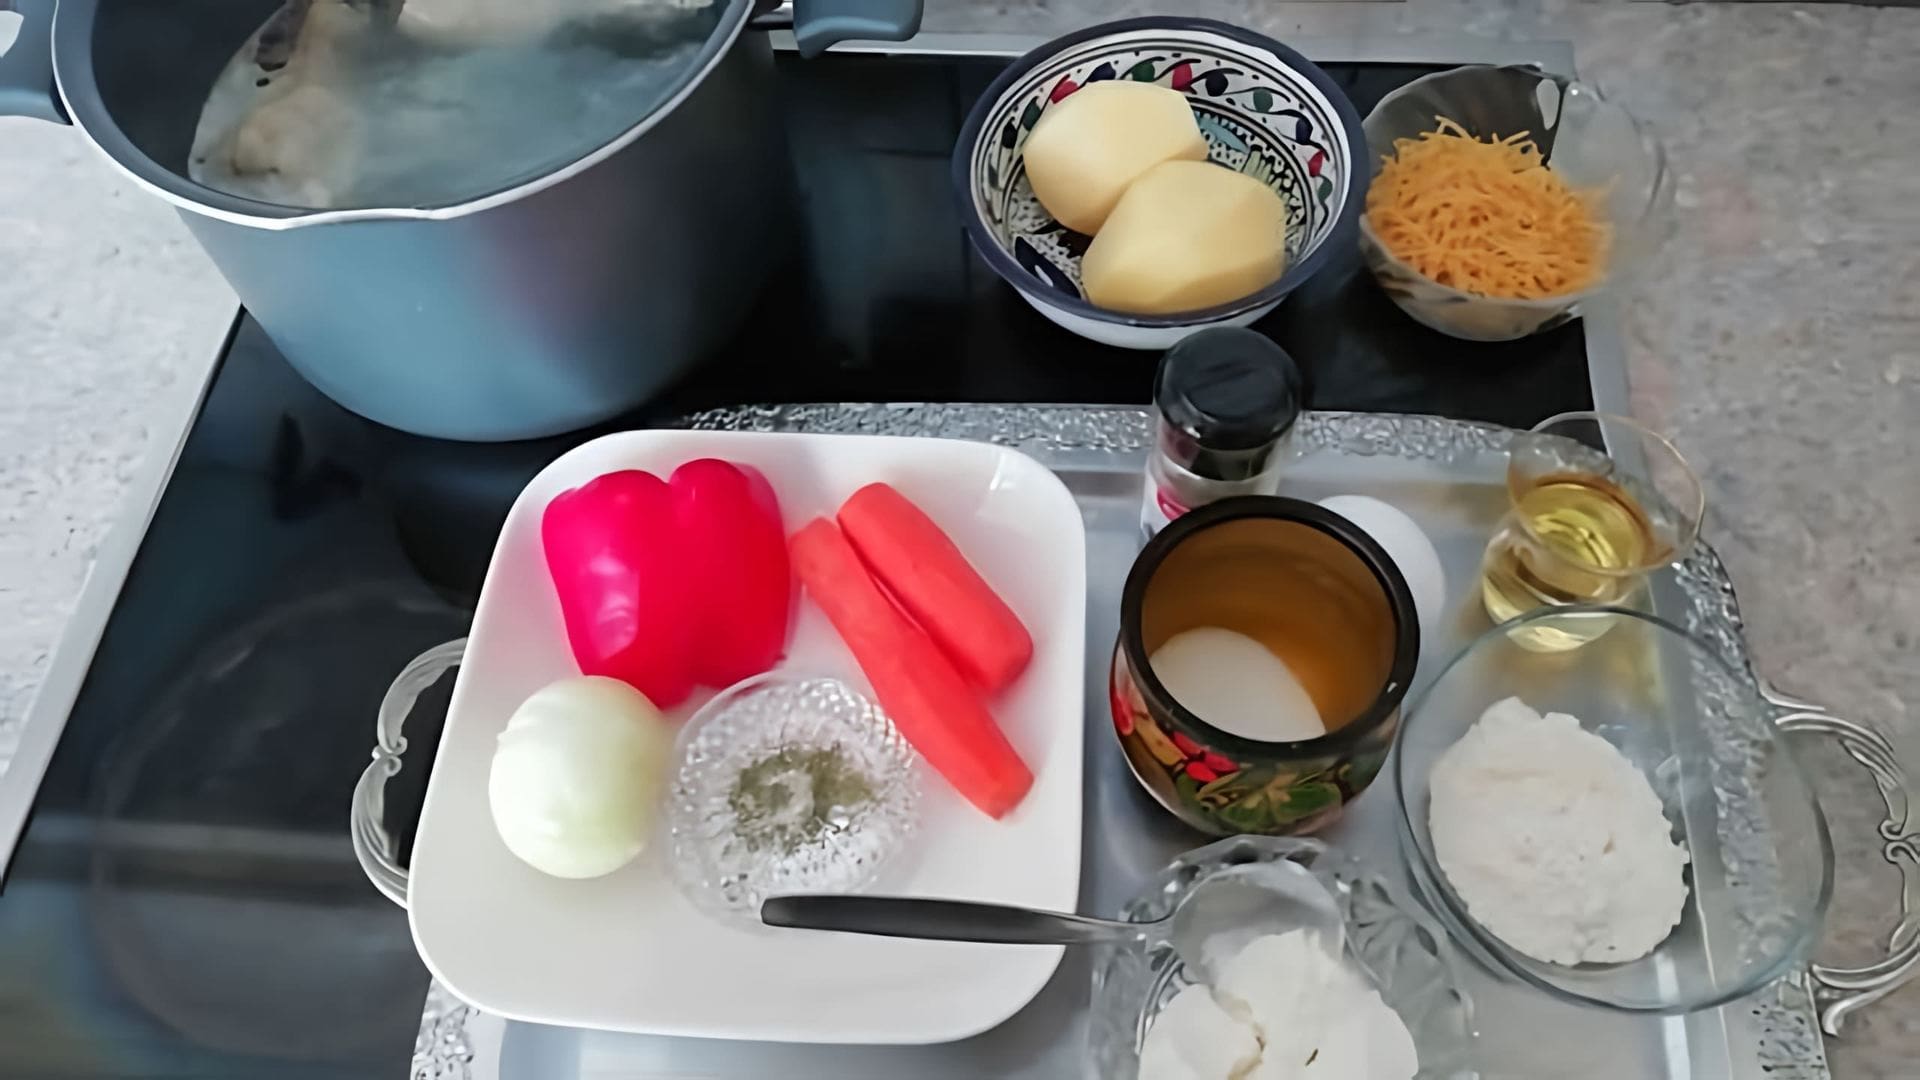 В этом видео демонстрируется процесс приготовления болгарского куриного супа под названием пелеш косу